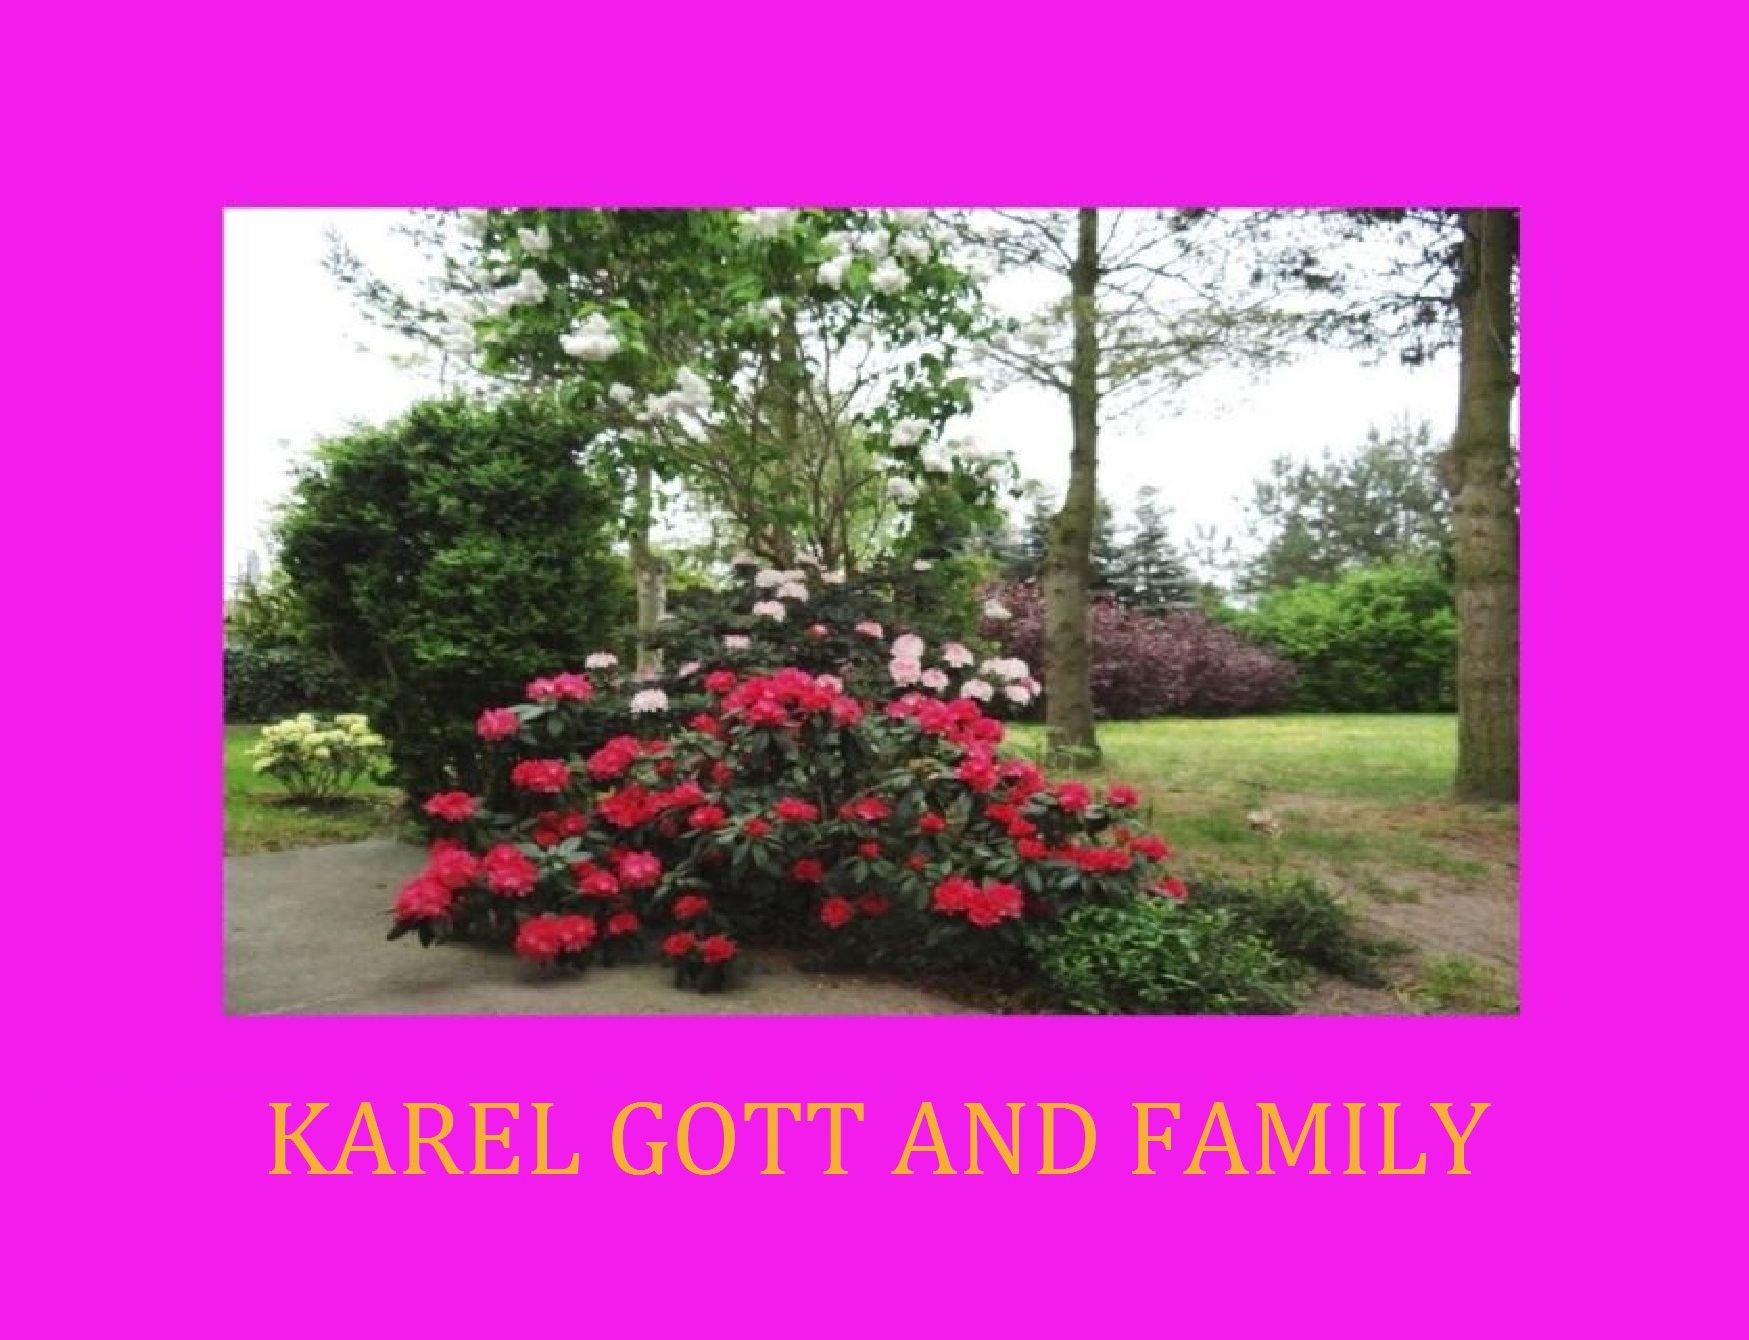 Die goldene Stimme aus Prag ist verstummt - Karel Gott starb am 1. Oktober 2019 im Alter von 80 Jahren - Karel Gott and Family 